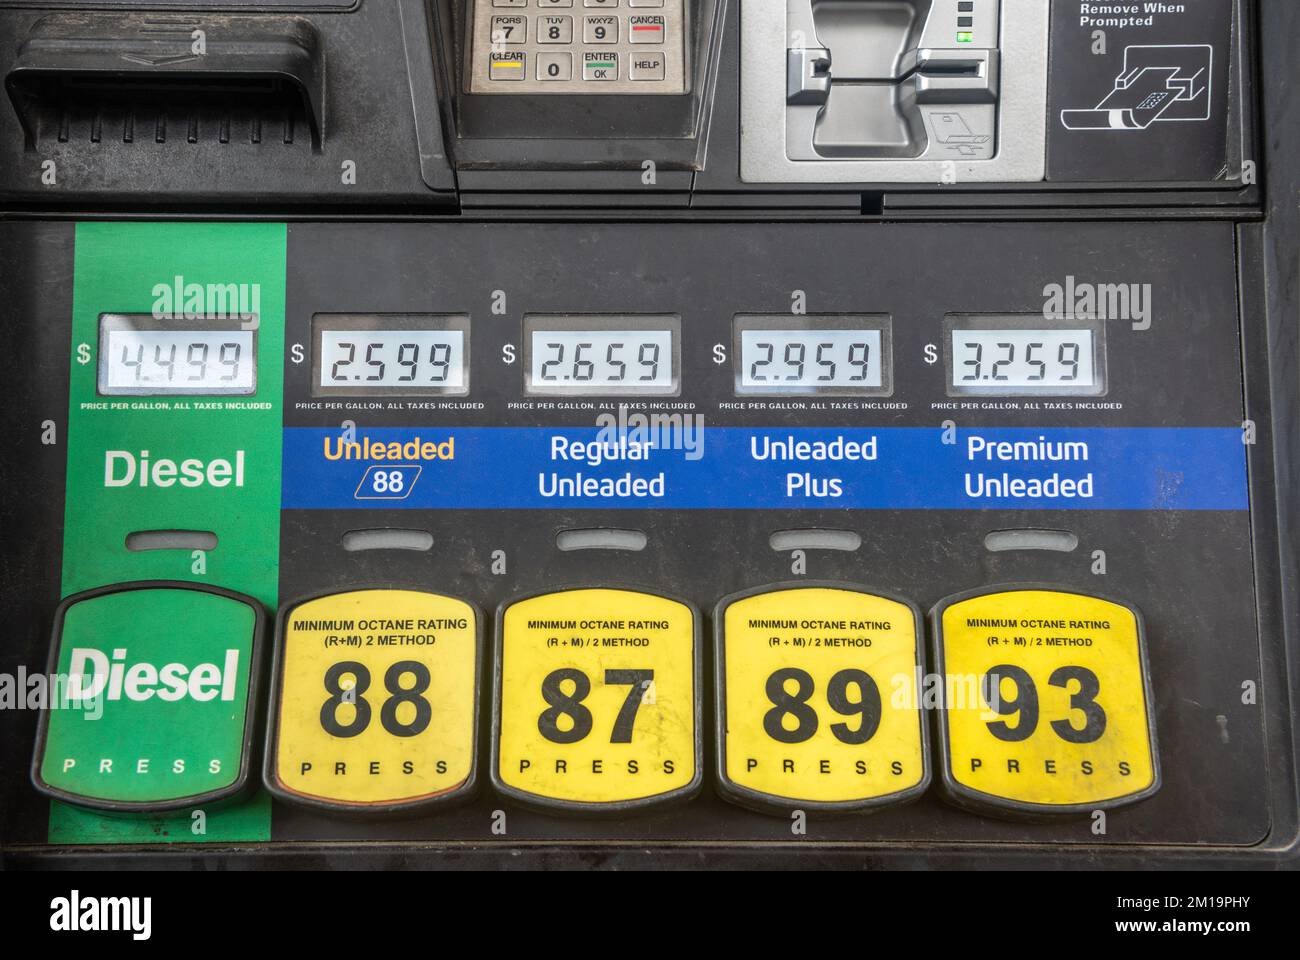 Bomba de gas en EE.UU. Mostrando precios por galón para diesel, sin plomo 88, regular sin plomo, sin plomo plus y premium sin plomo. Foto tomada en Louisiana, EE.UU Foto de stock